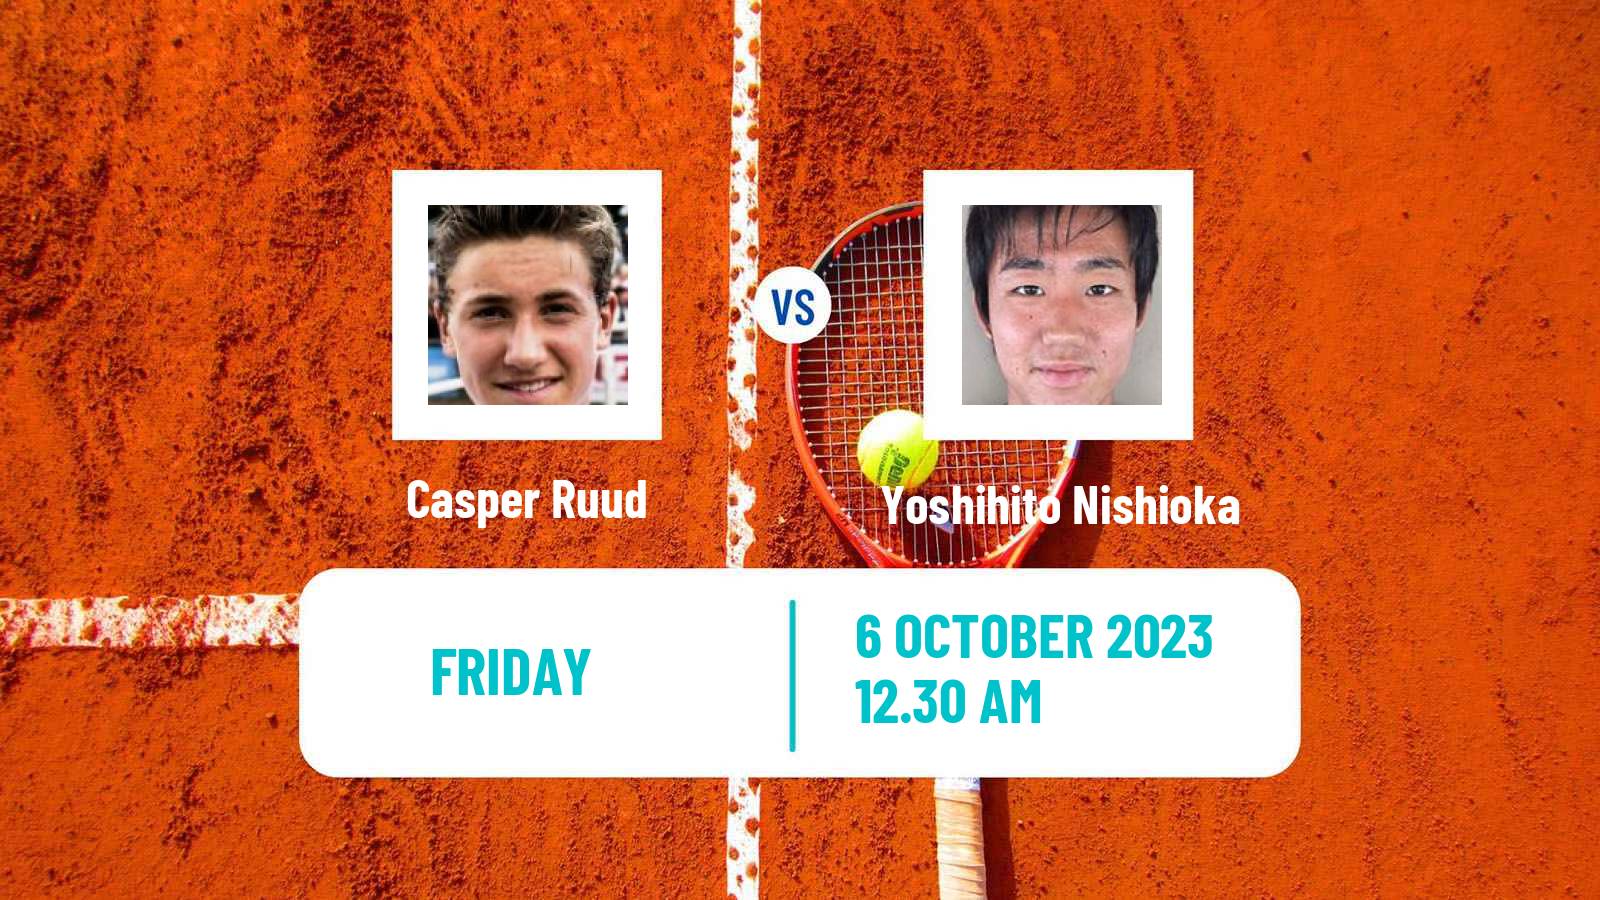 Tennis ATP Shanghai Casper Ruud - Yoshihito Nishioka